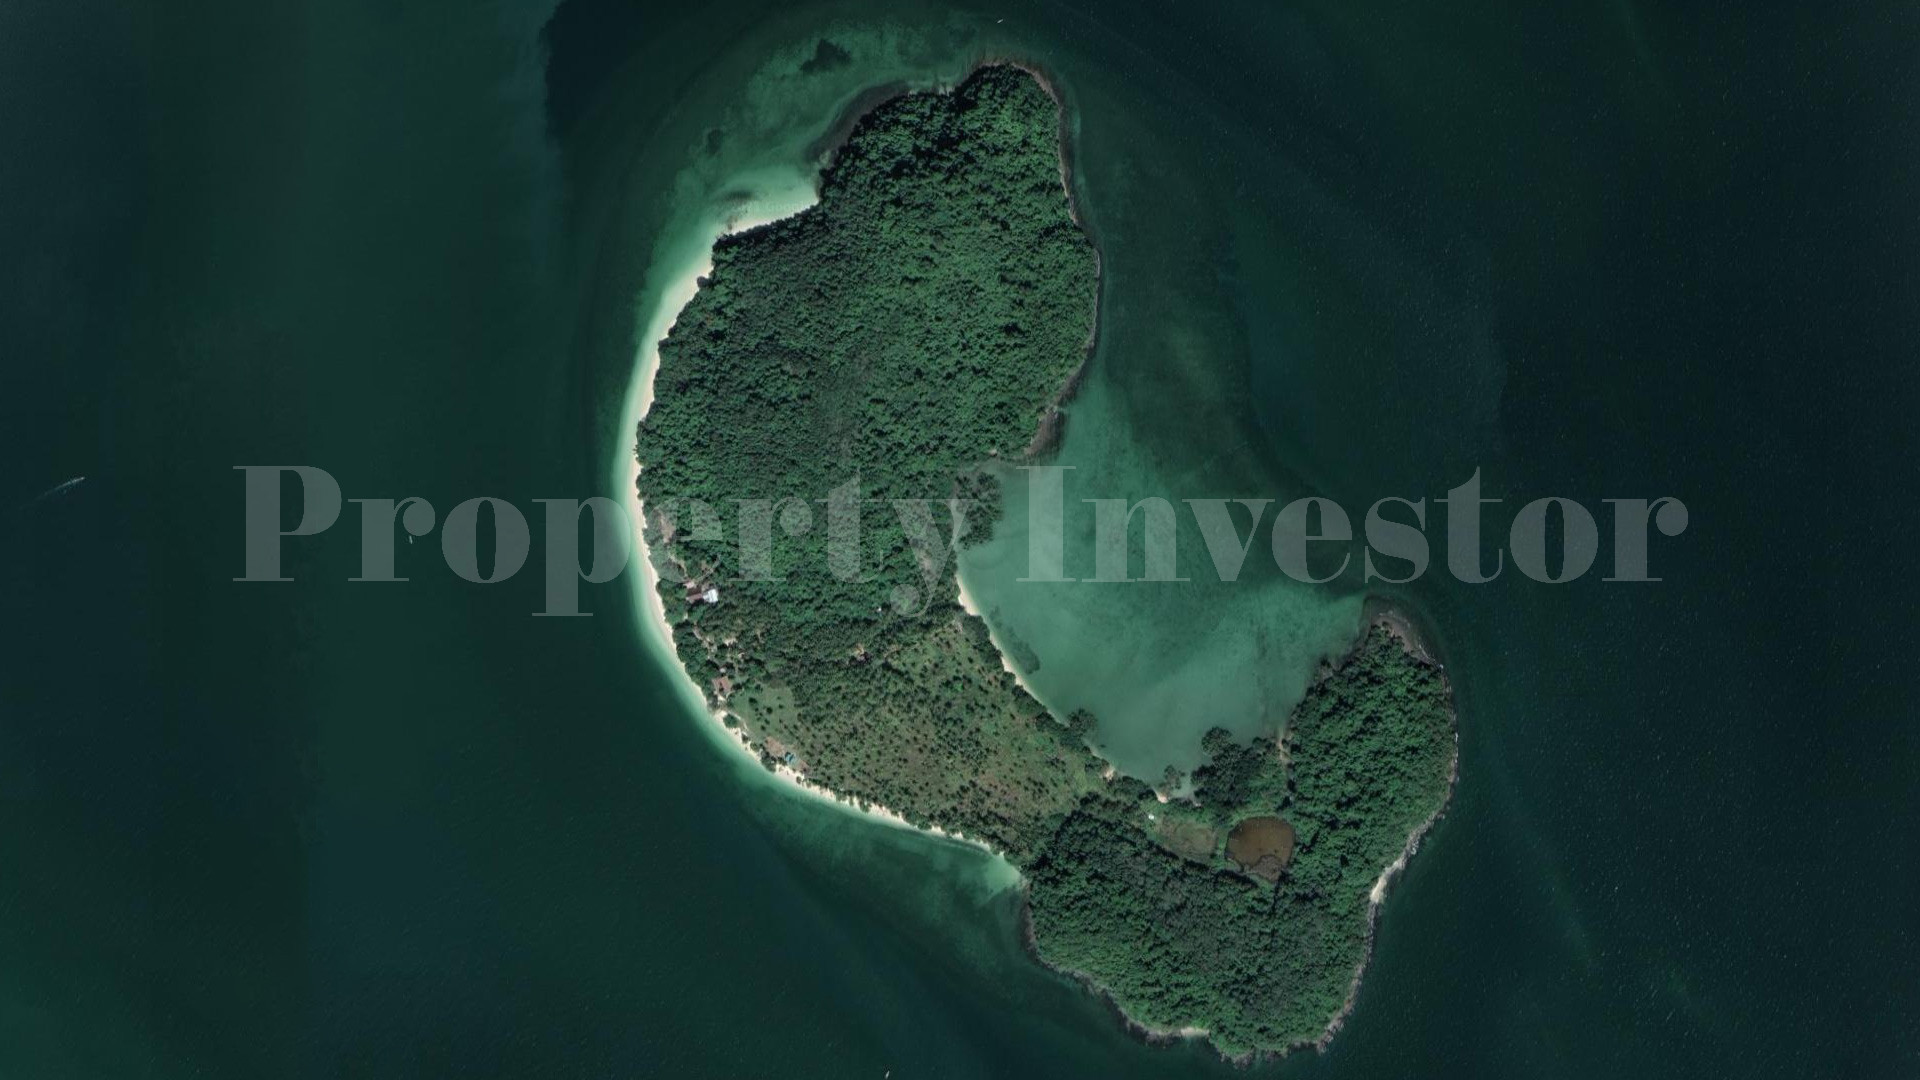 Продаётся частный дикий райский остров 44,5 га под строительство в Тайланде